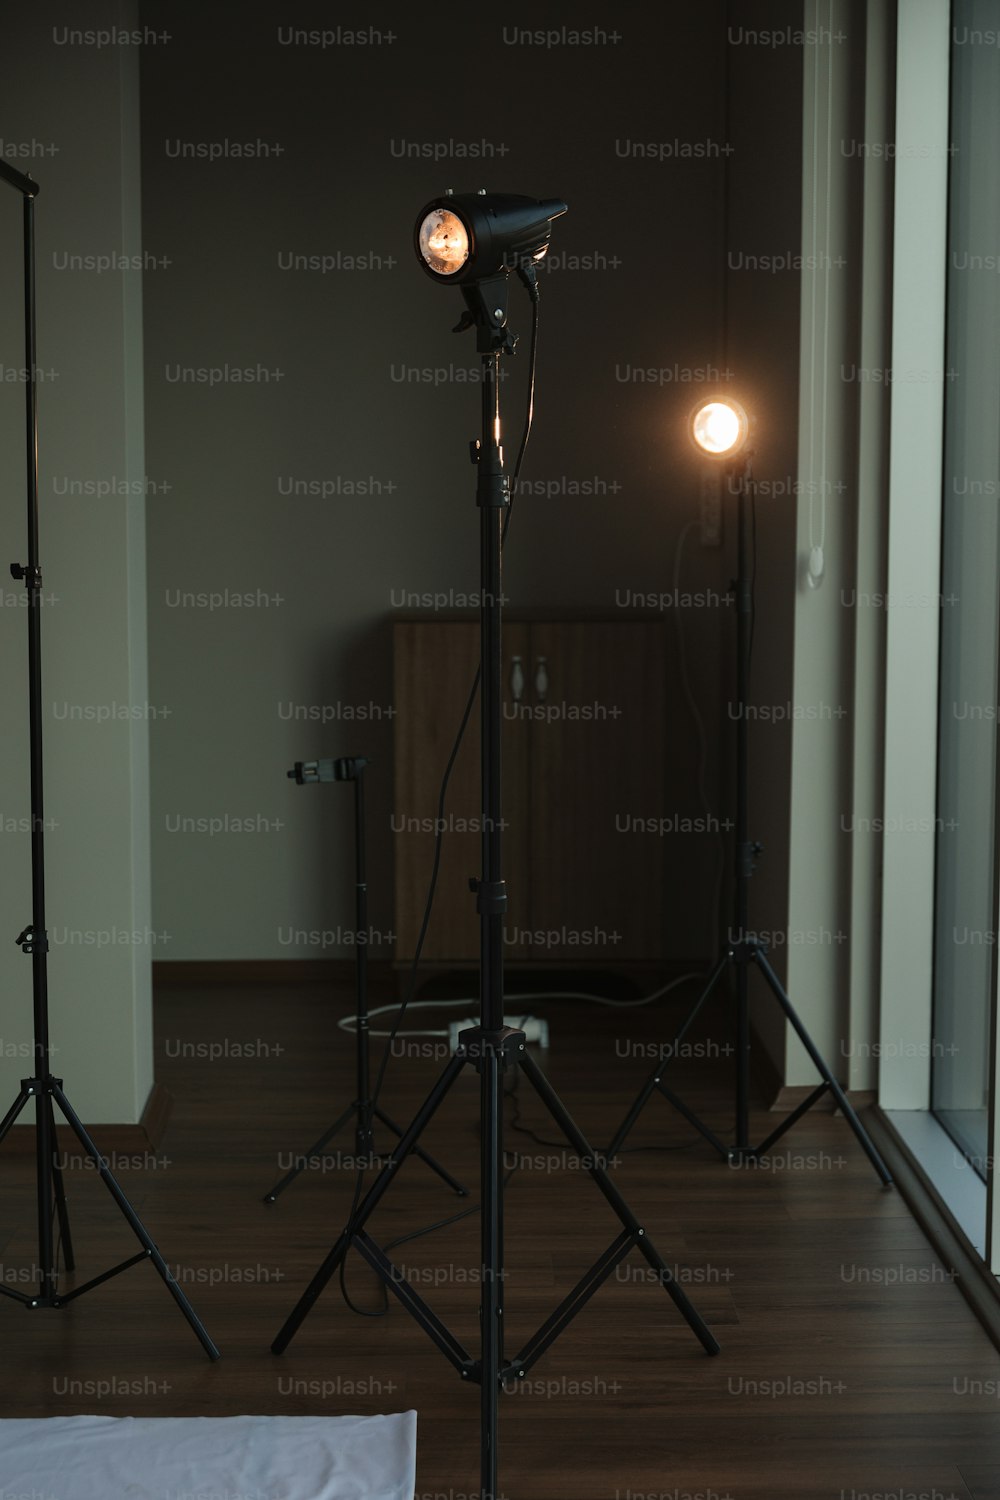 Una habitación con una luz y una cámara en un trípode